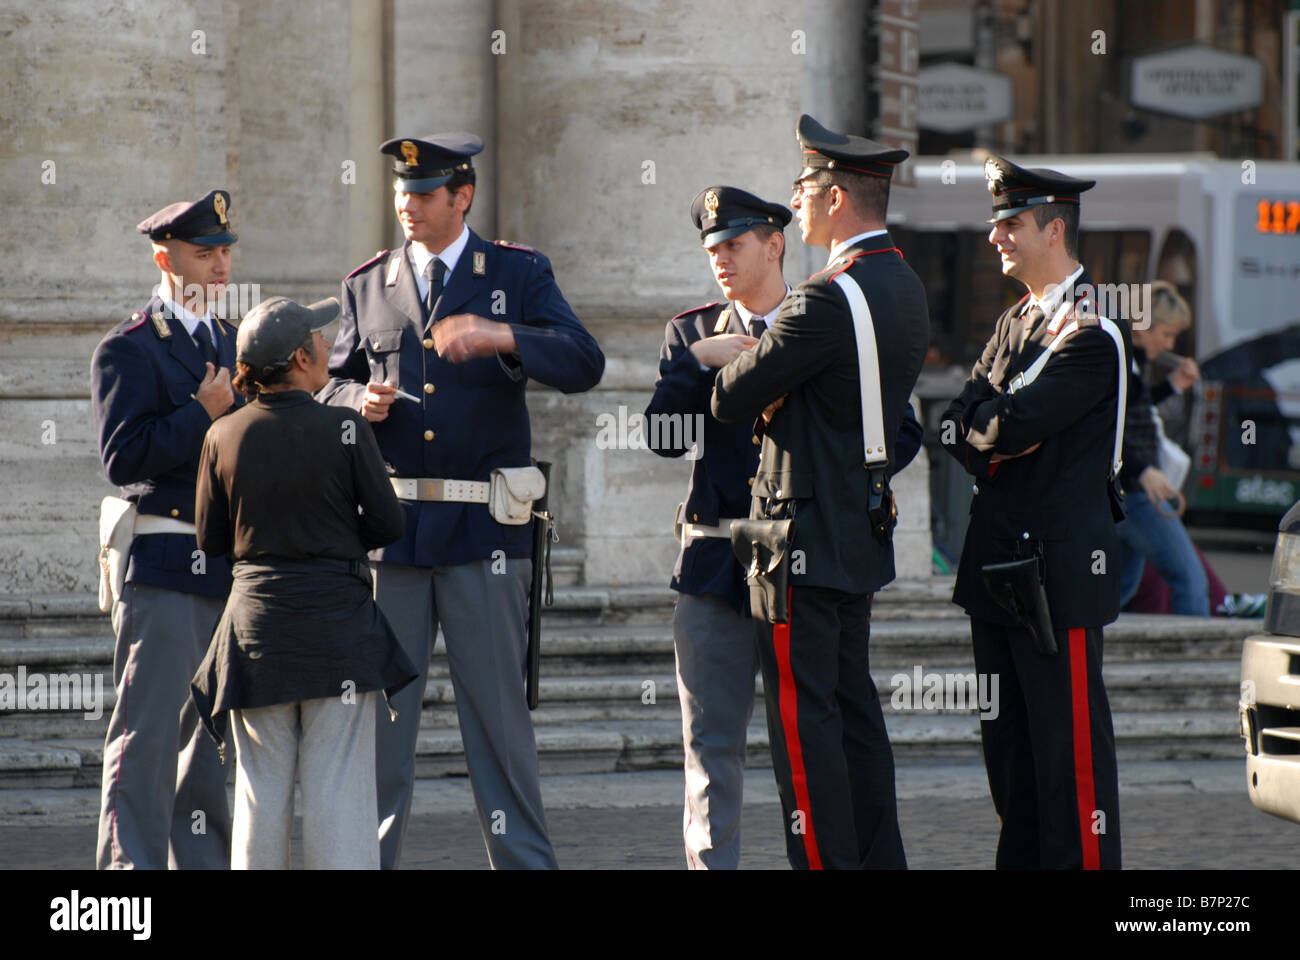 Gli uomini della polizia dando indicazioni turistiche in Piazza del Popolo a Roma Italia Foto Stock